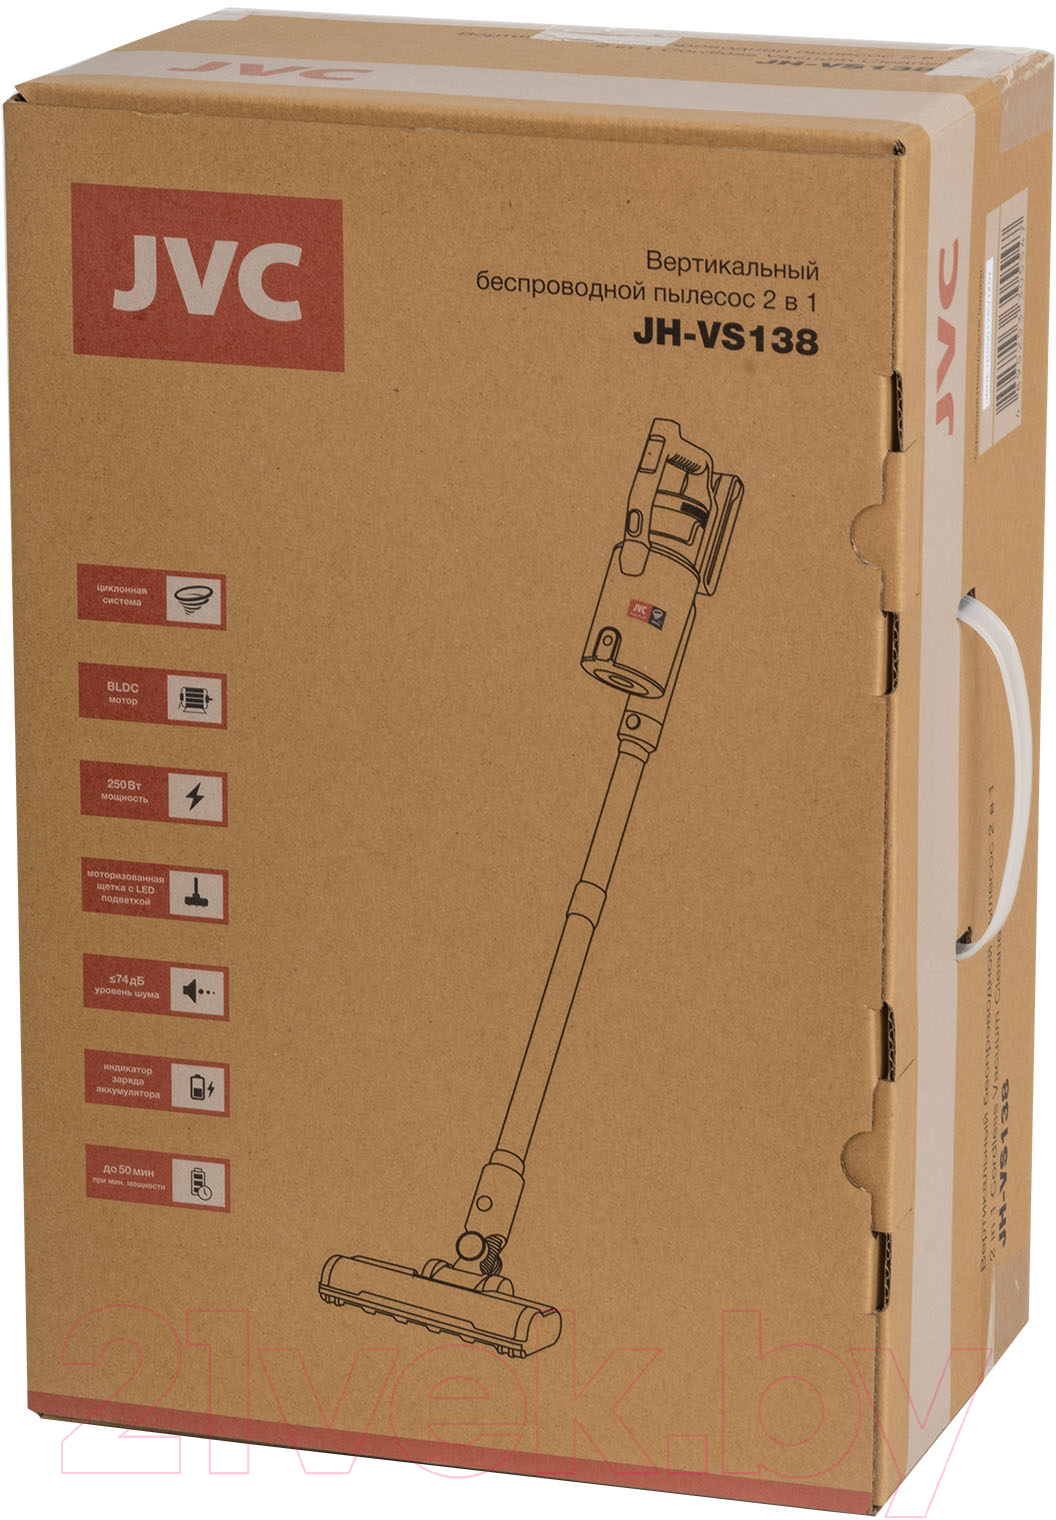 Вертикальный пылесос JVC JH-VS138